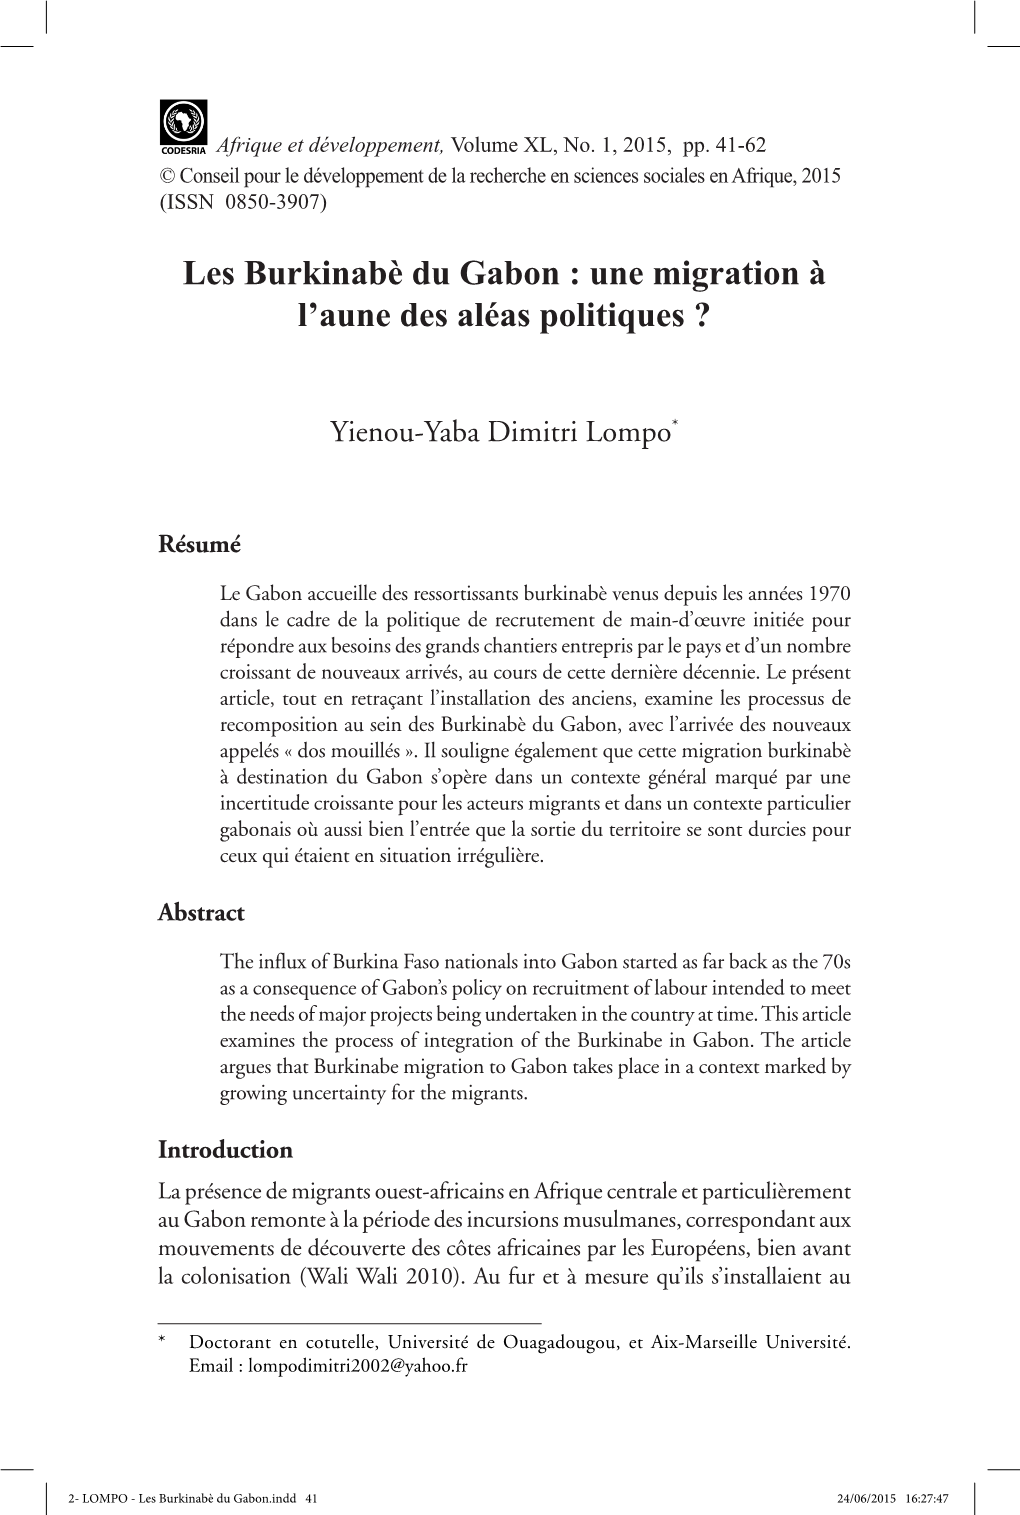 Les Burkinabè Du Gabon : Une Migration À L'aune Des Aléas